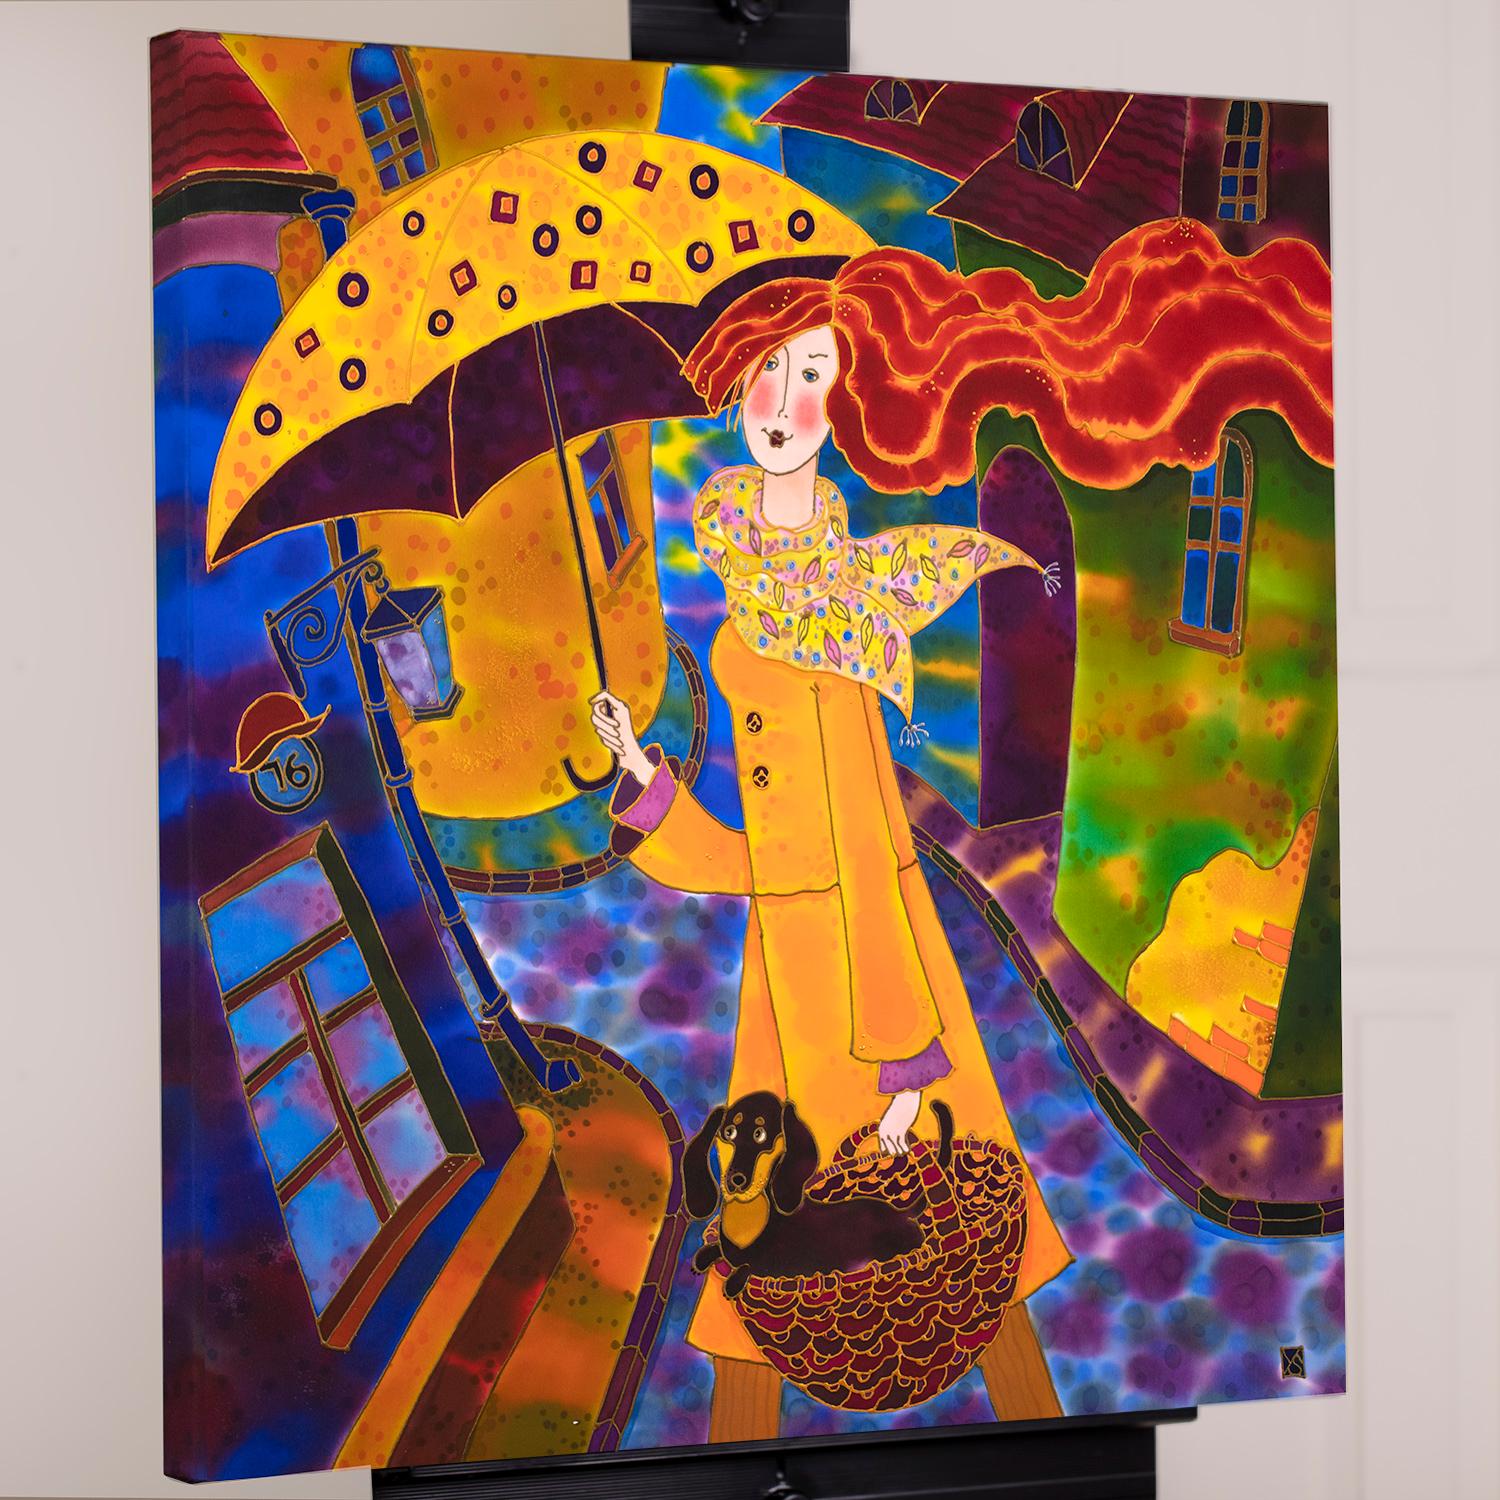 <p>Commentaires de l'artiste<br>L'artiste Yelena Sidorova illustre une jeune fille rousse errant dans une vieille ville européenne. Elle porte un parapluie dans une main et son chien niché dans un panier dans l'autre. 